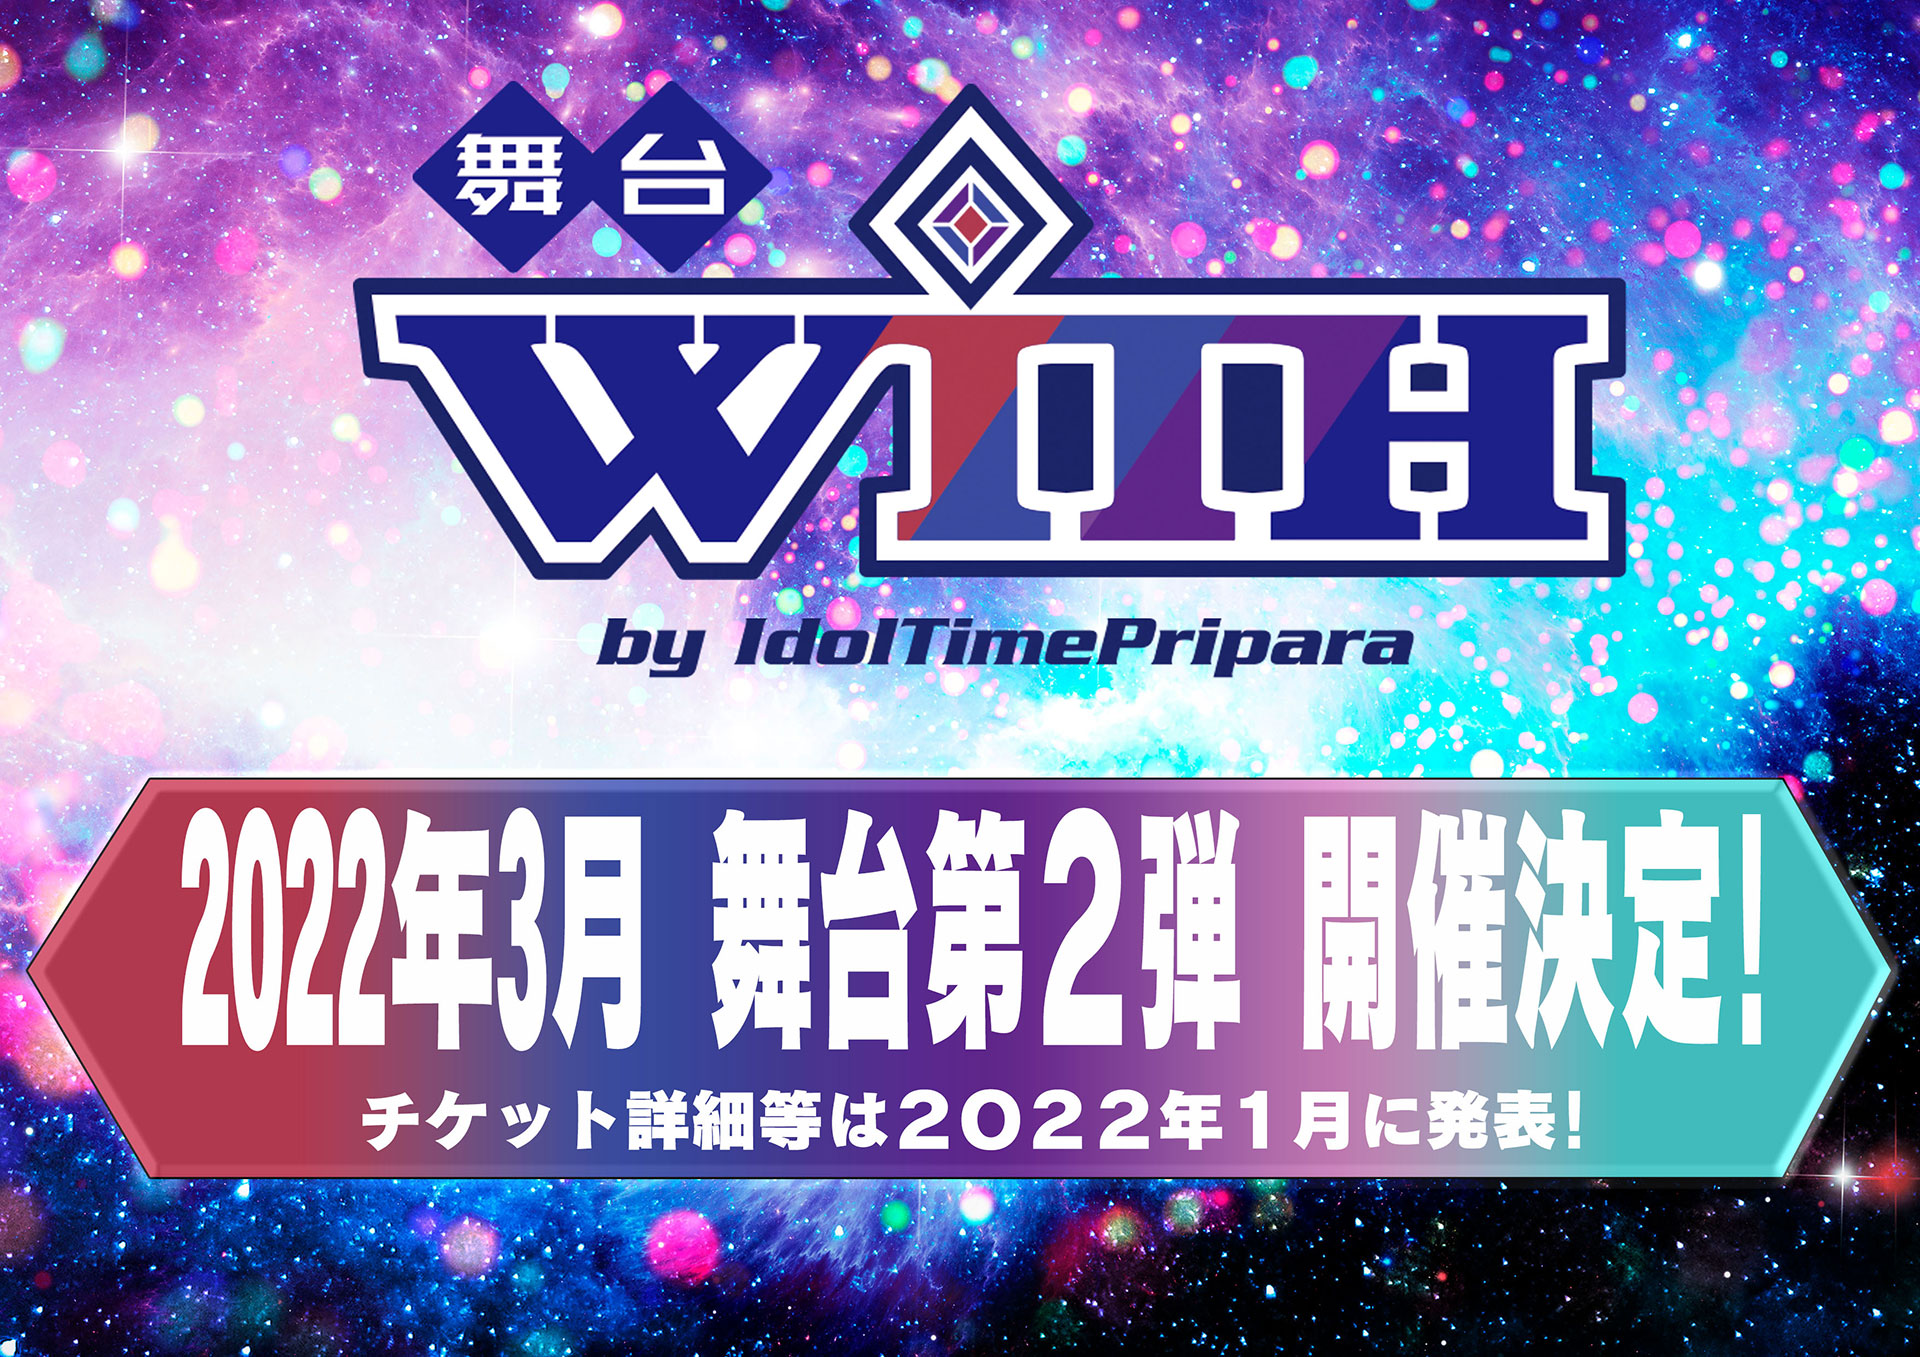 舞台WITH 2022年3月 舞台第2弾 開催決定!